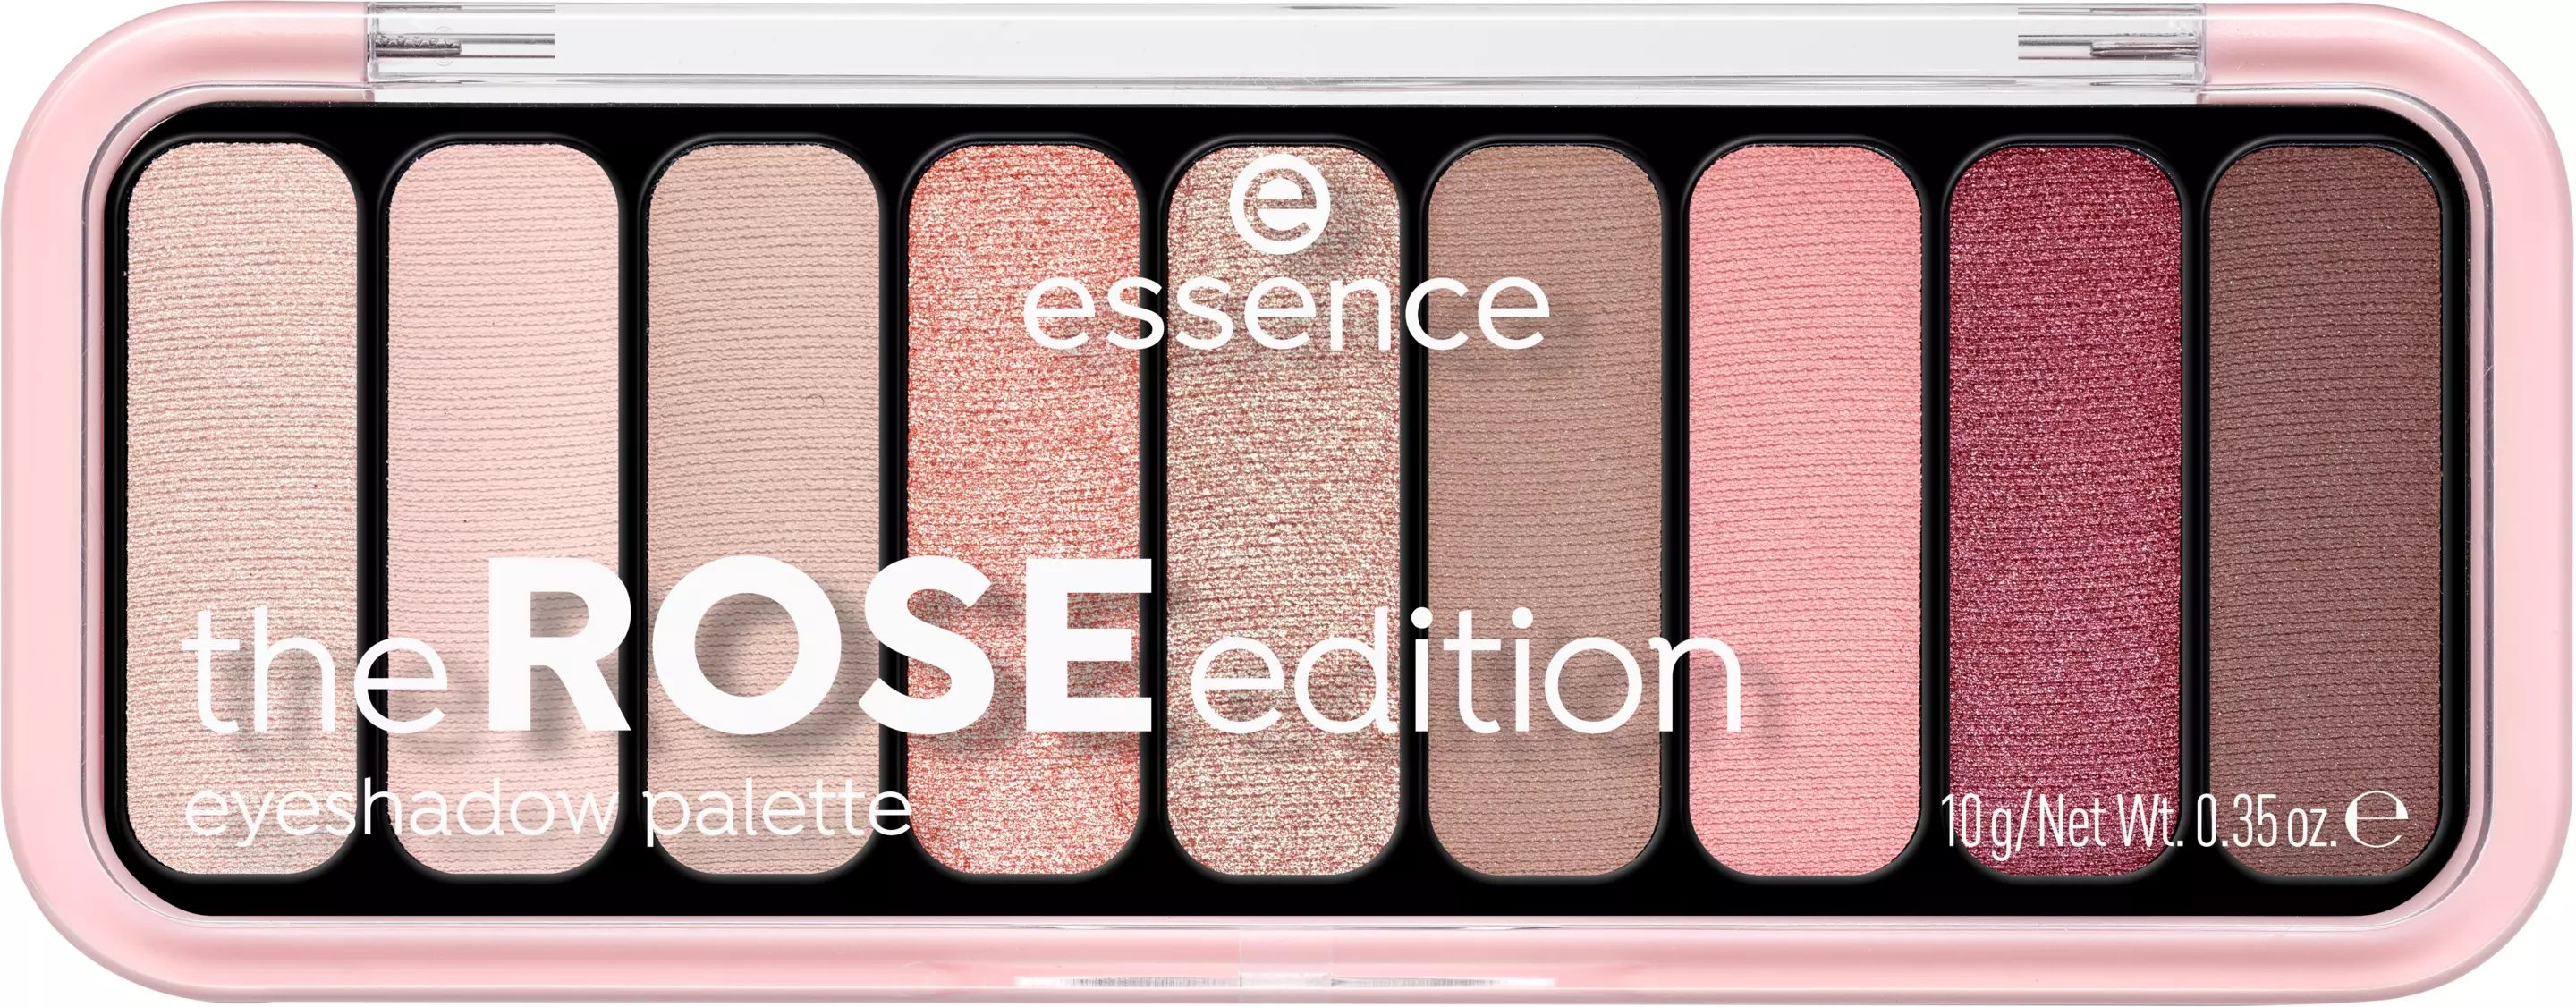 essence-the-rose-edition-ogonskuggspalett-20-2434-397-0000_1.jpg